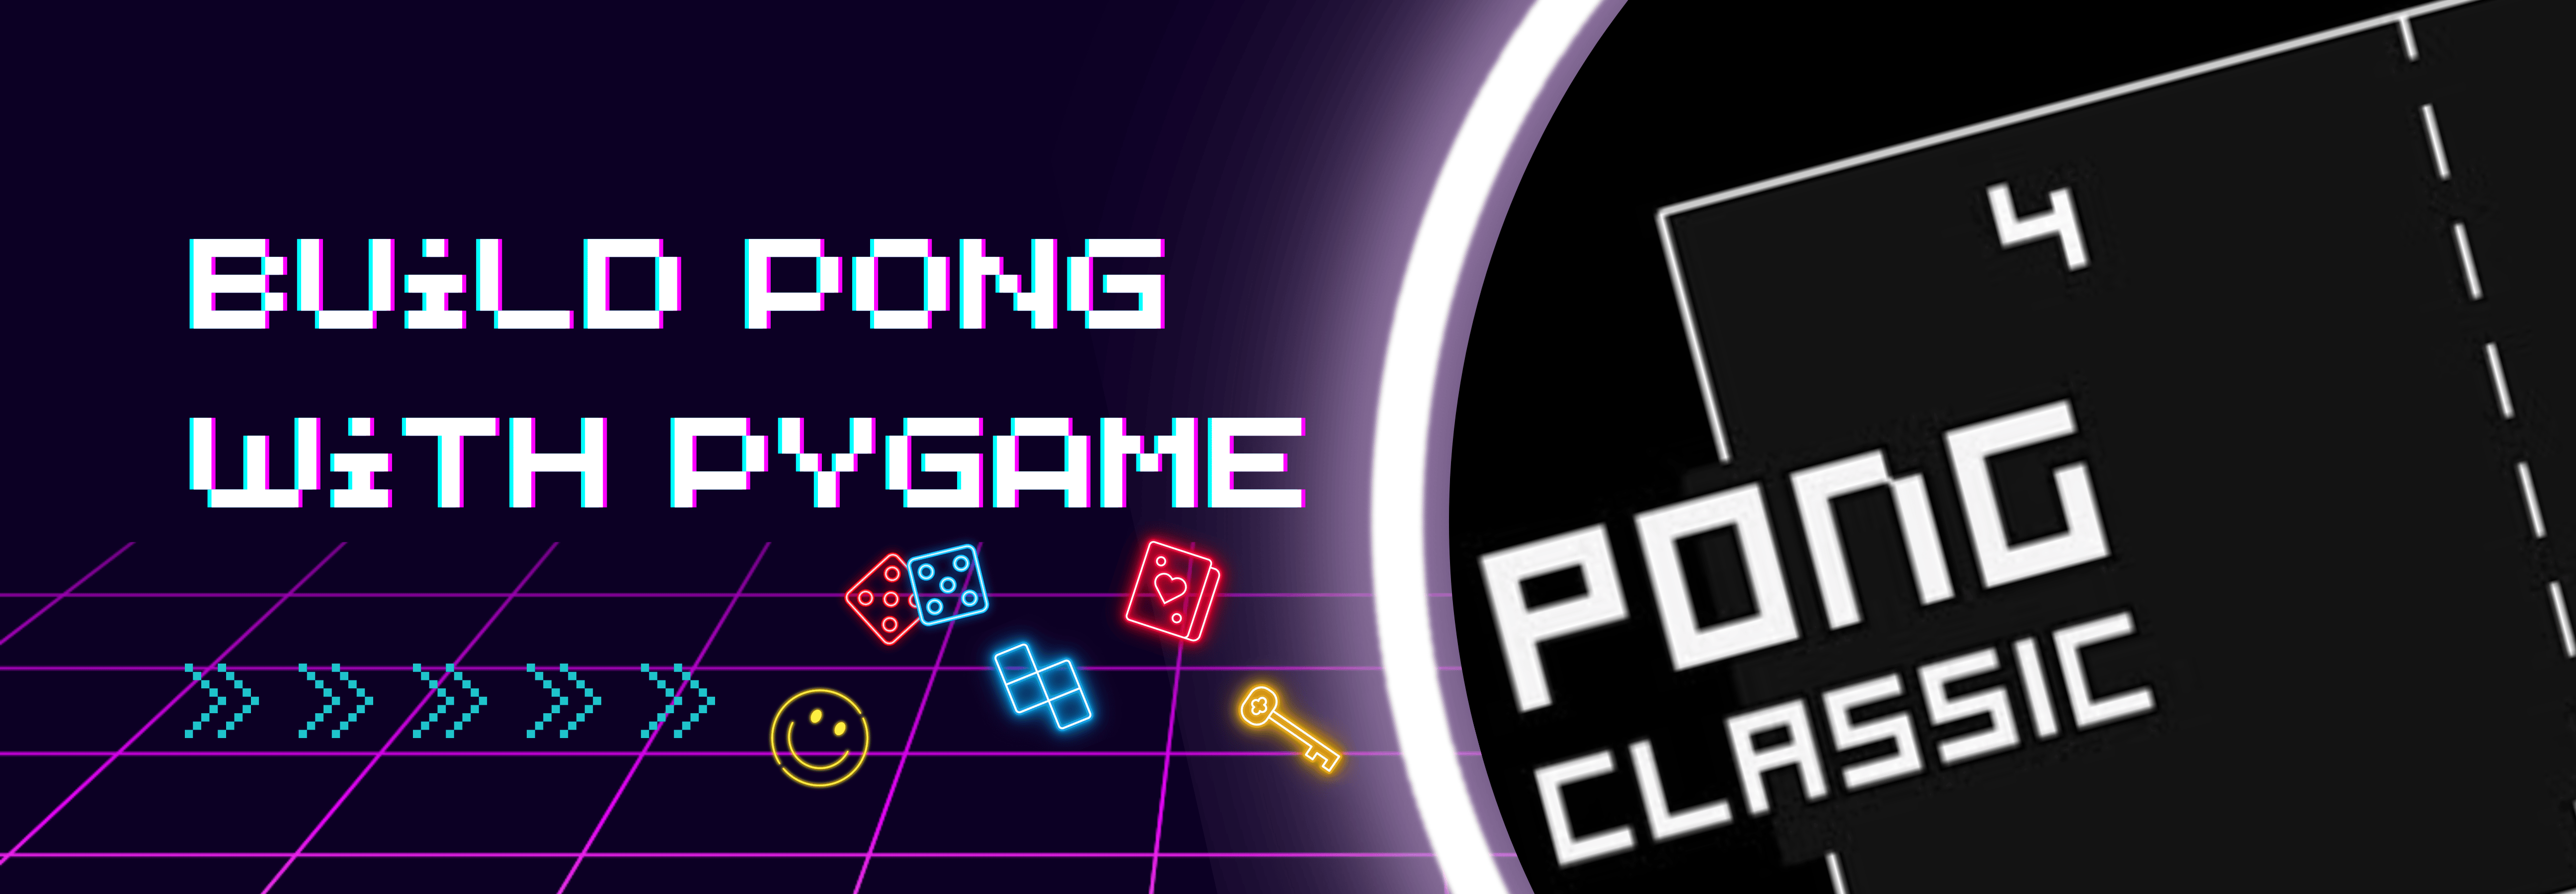 Basic Pong HTML and JavaScript Game · GitHub